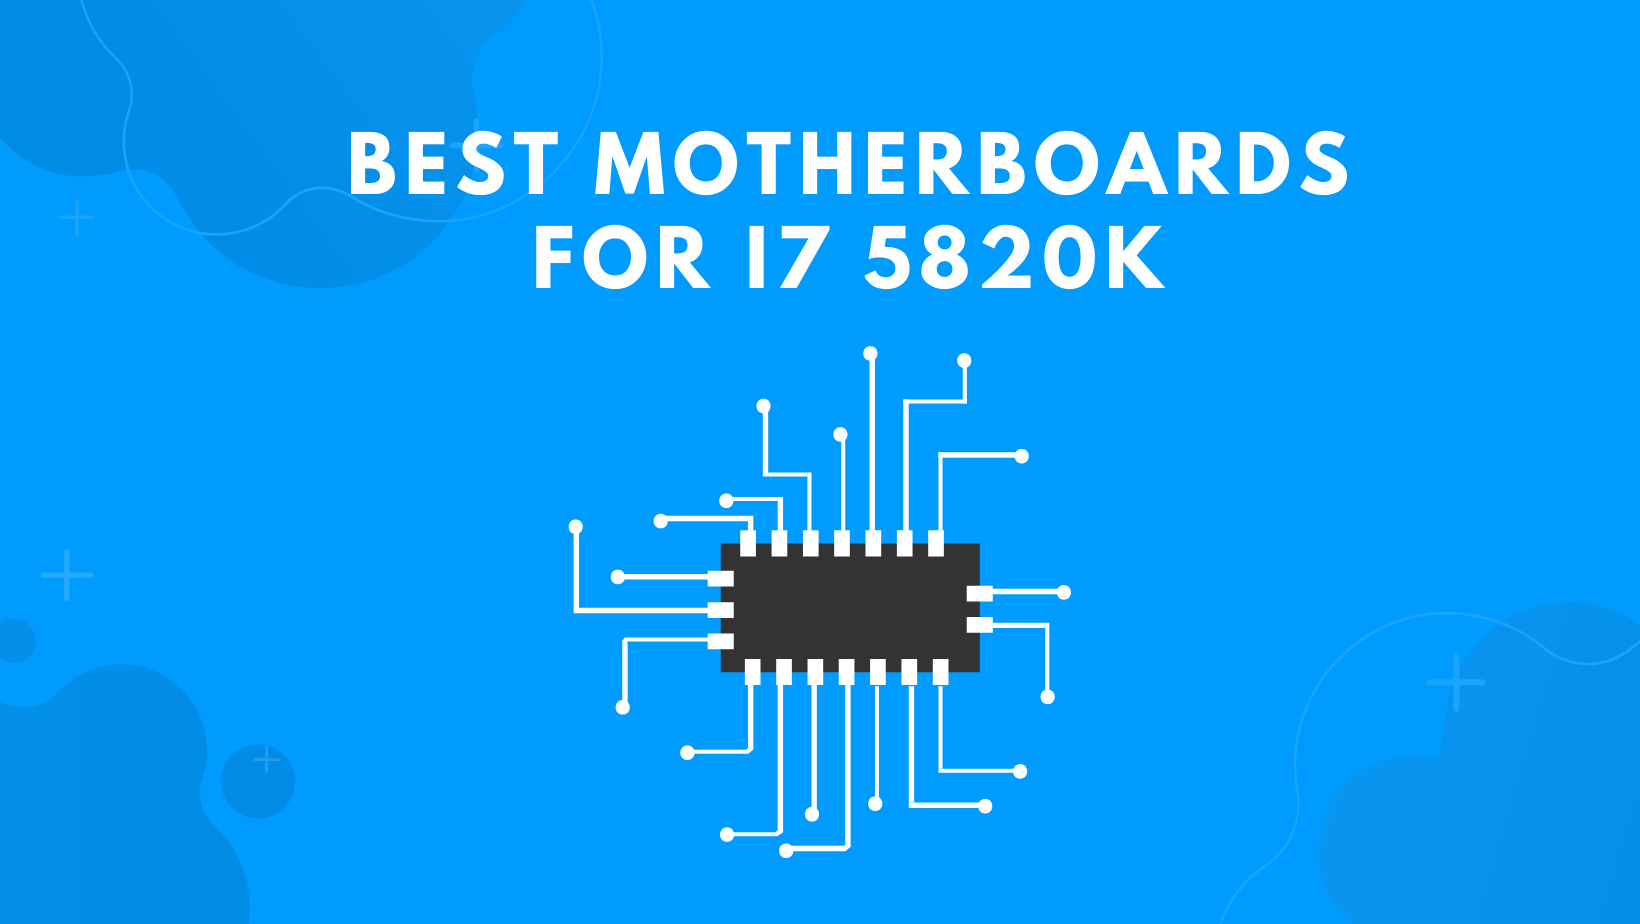 Best Motherboards For i7 5820k